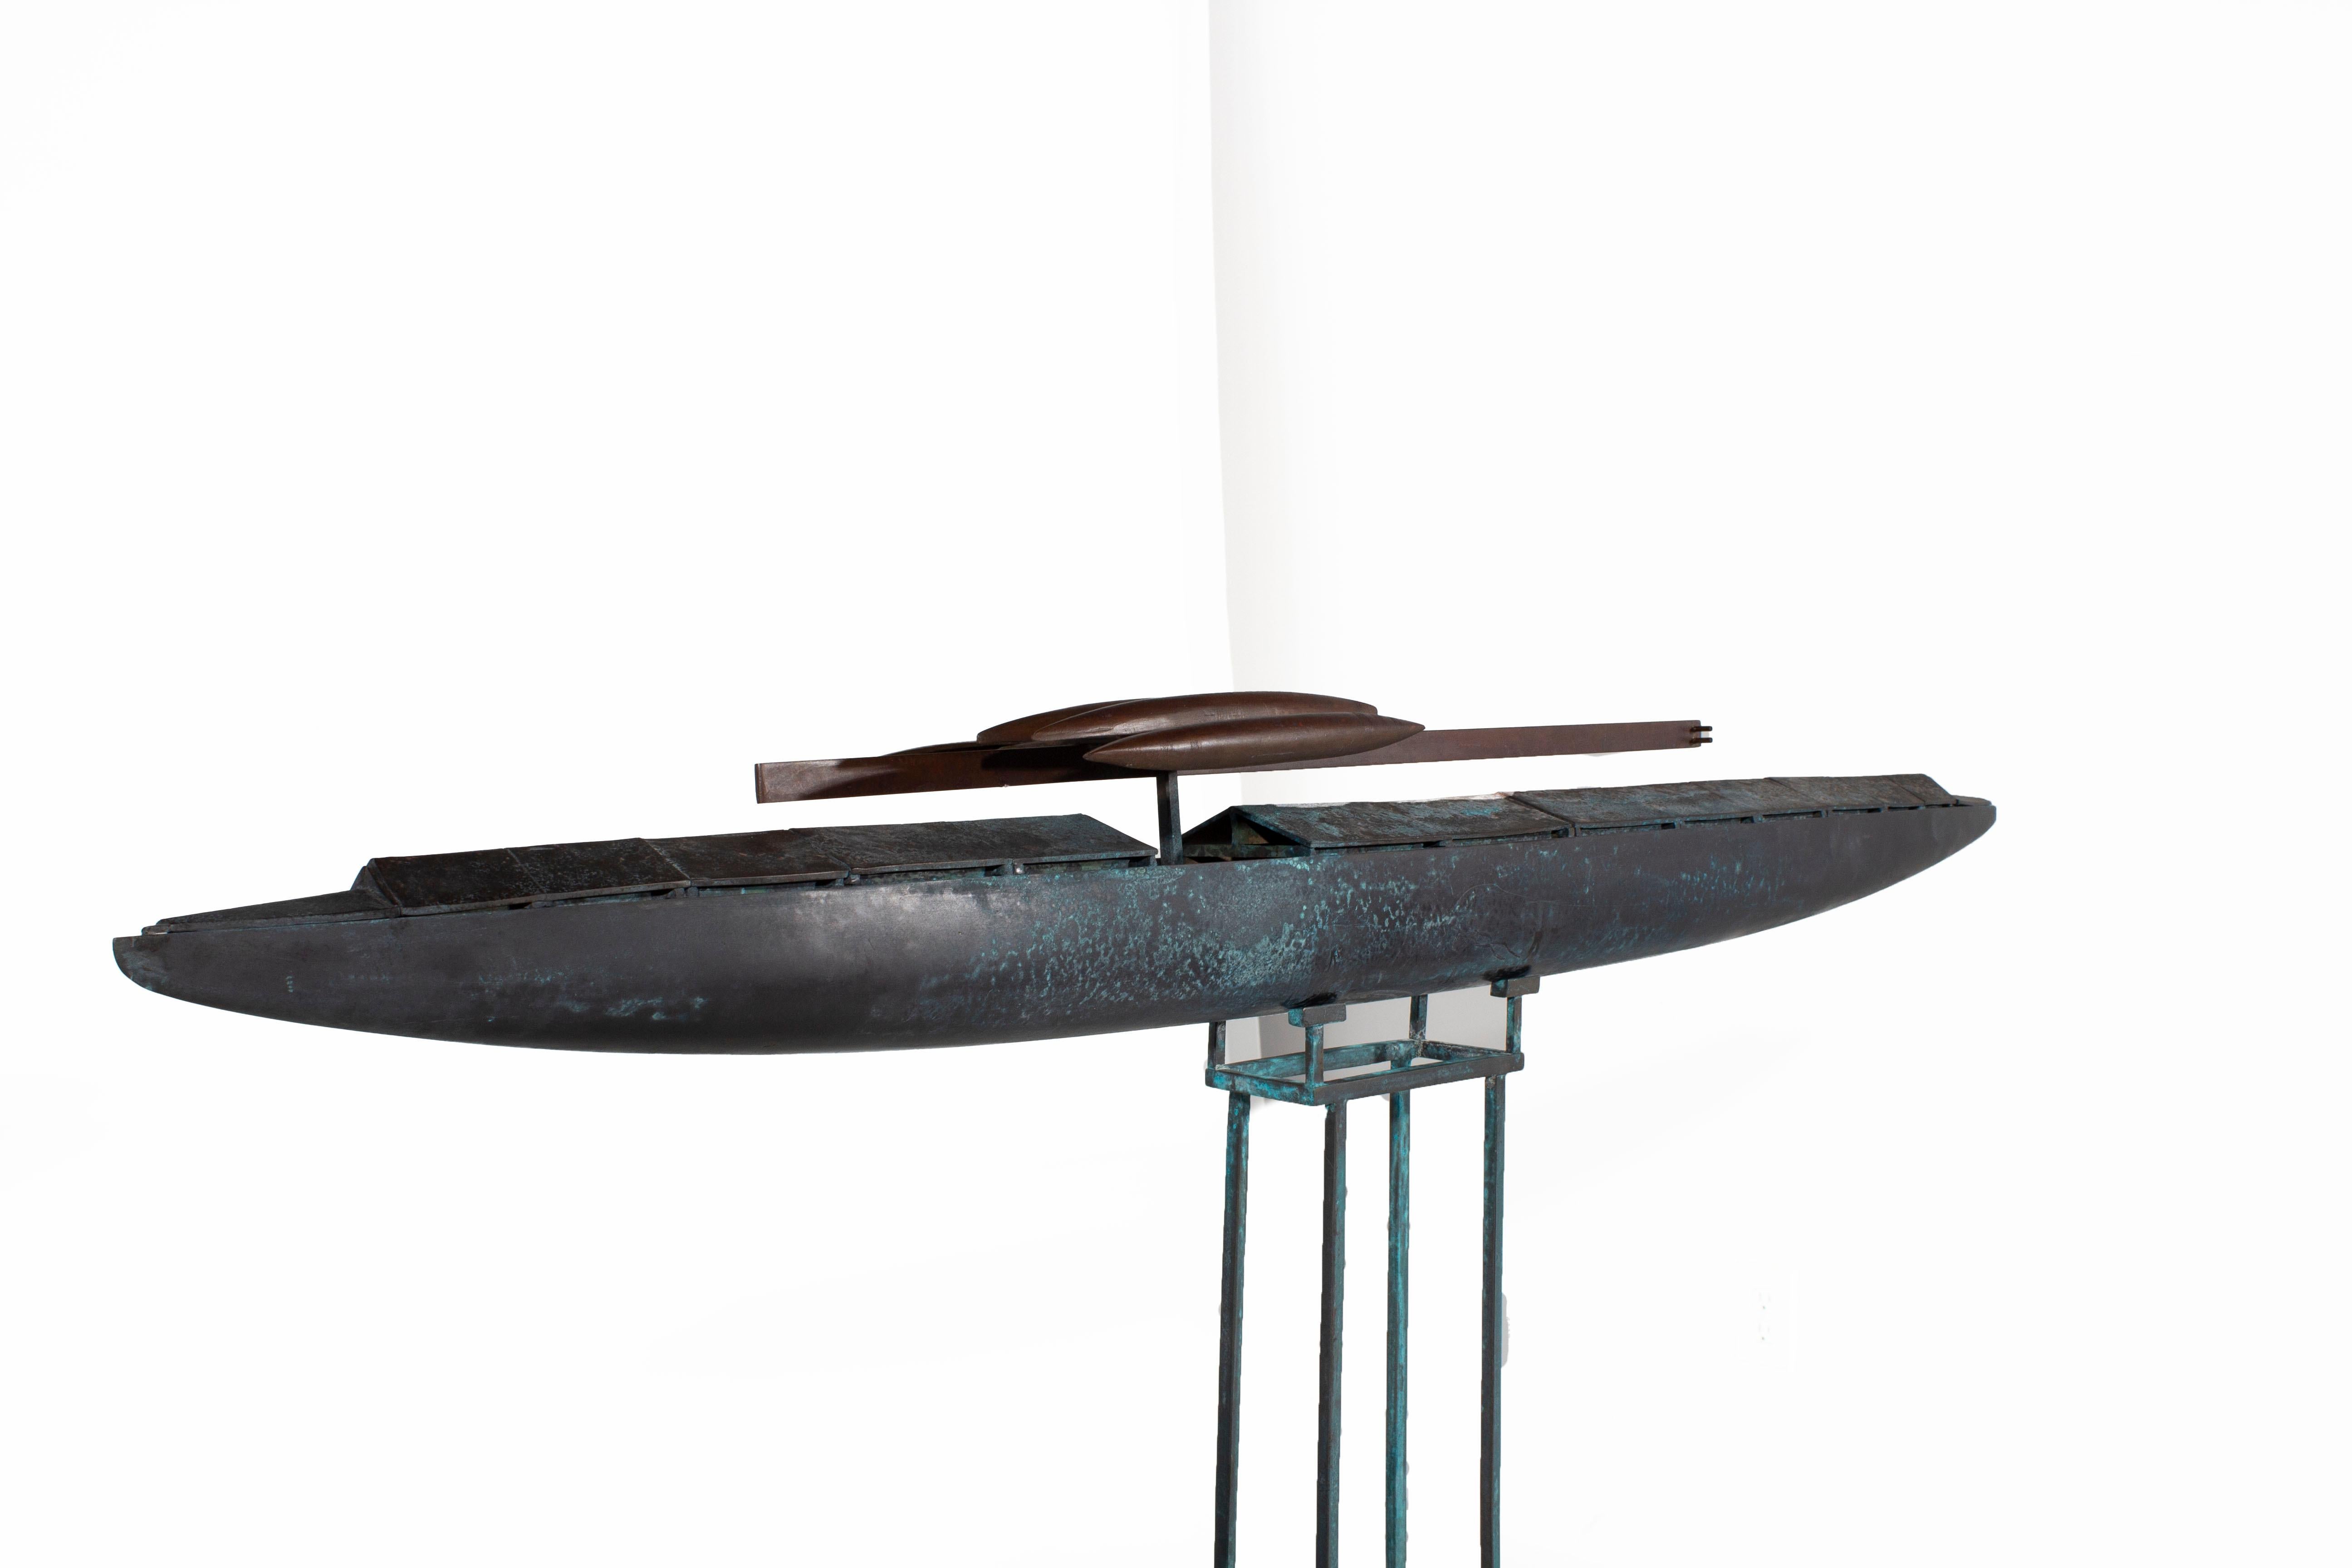 Fantasieschiffskulptur aus Bronzeguss mit eisernen Torpedos und Eisenständer

Sie stammen aus einem anonymen Studio eines Künstlers, das auf der nordwestlichen Halbinsel demontiert wurde. Sie sind alle aus Bronze gegossen, mit Ausnahme der